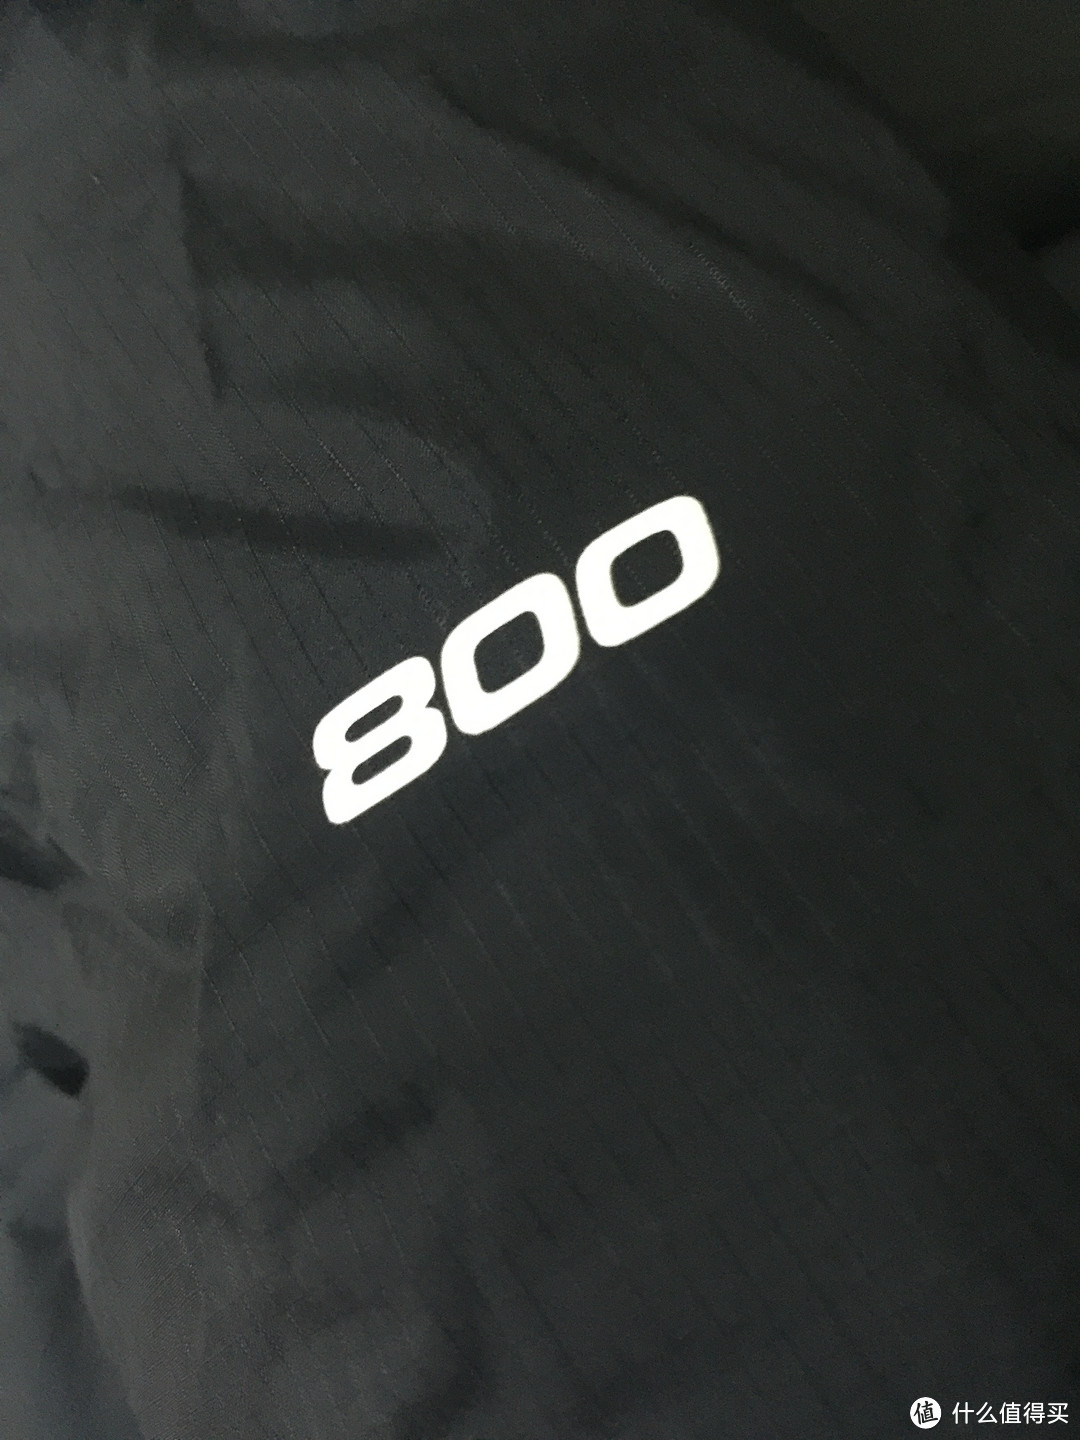 蓬度不是最高的900，而是800。但是据说黑科技的800要比900暖和。